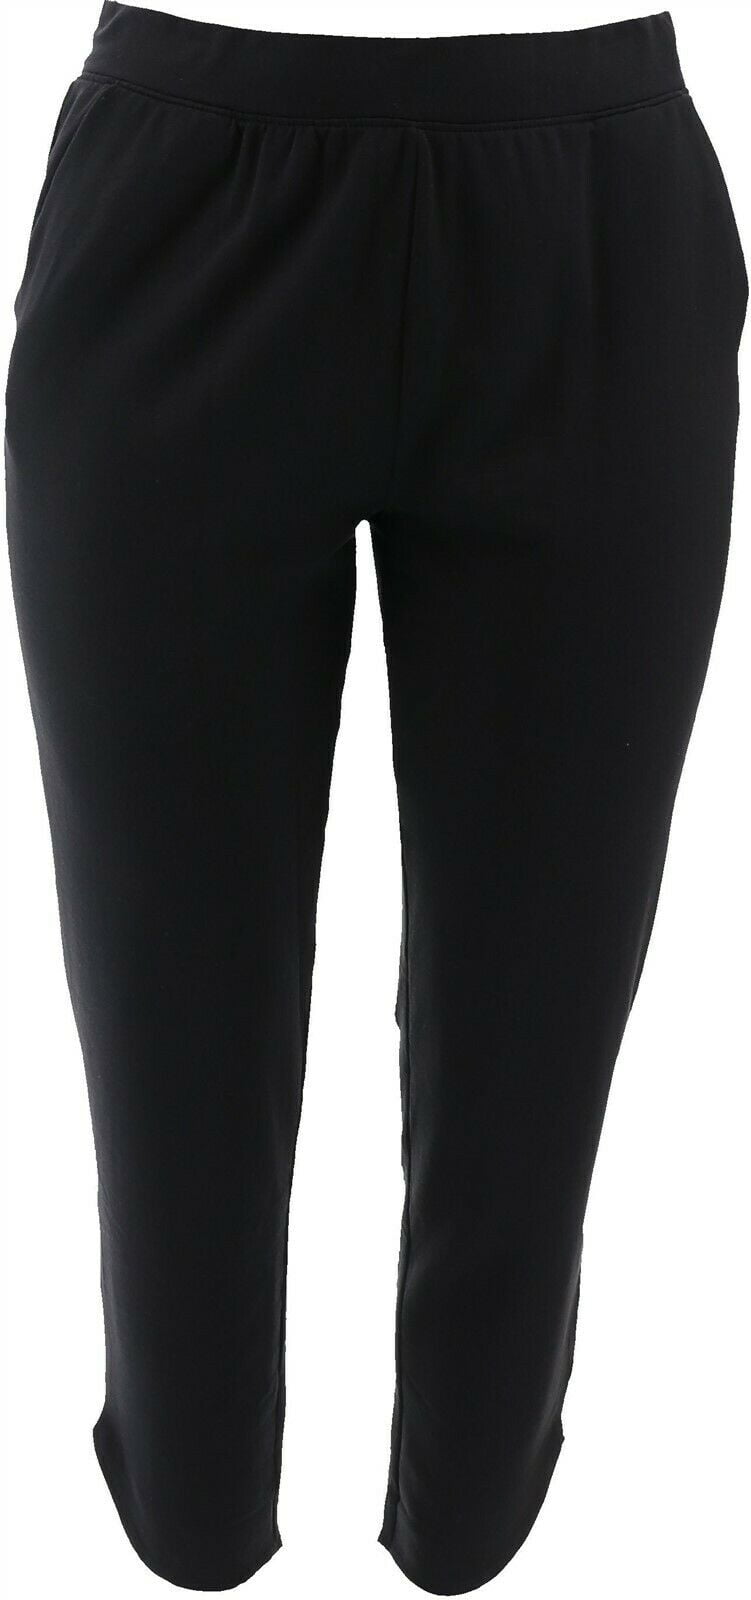 Cuddl Duds Comfortwear Tulip Hem Slim Pants Black PM NEW A368074